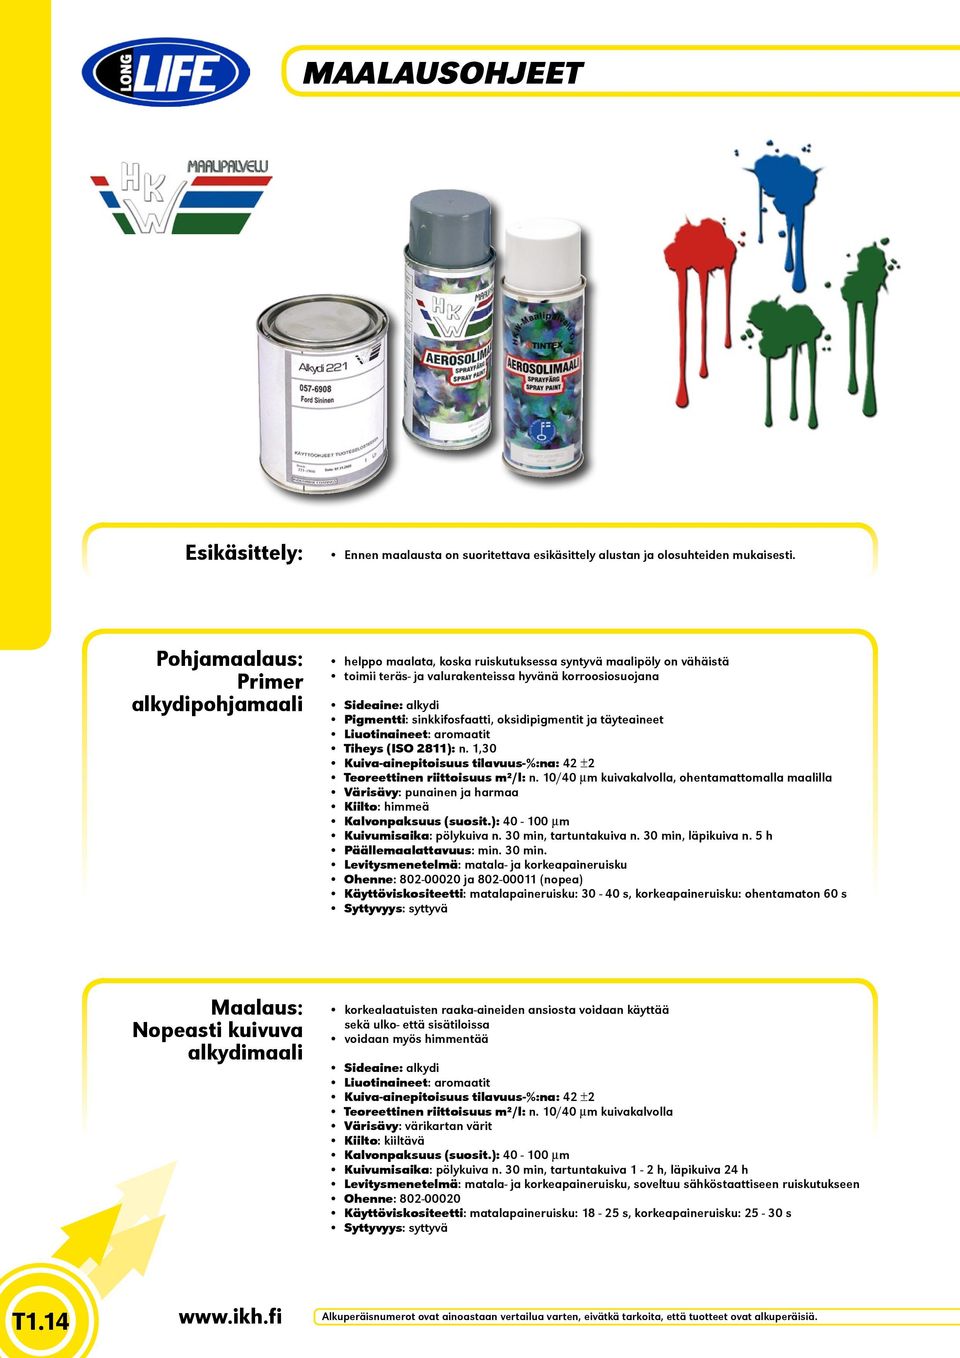 sinkkifosfaatti, oksidipigmentit ja täyteaineet Liuotinaineet: aromaatit Tiheys (ISO 2811): n. 1,30 Kuiva-ainepitoisuus tilavuus-%:na: 42 ±2 Teoreettinen riittoisuus m²/l: n.